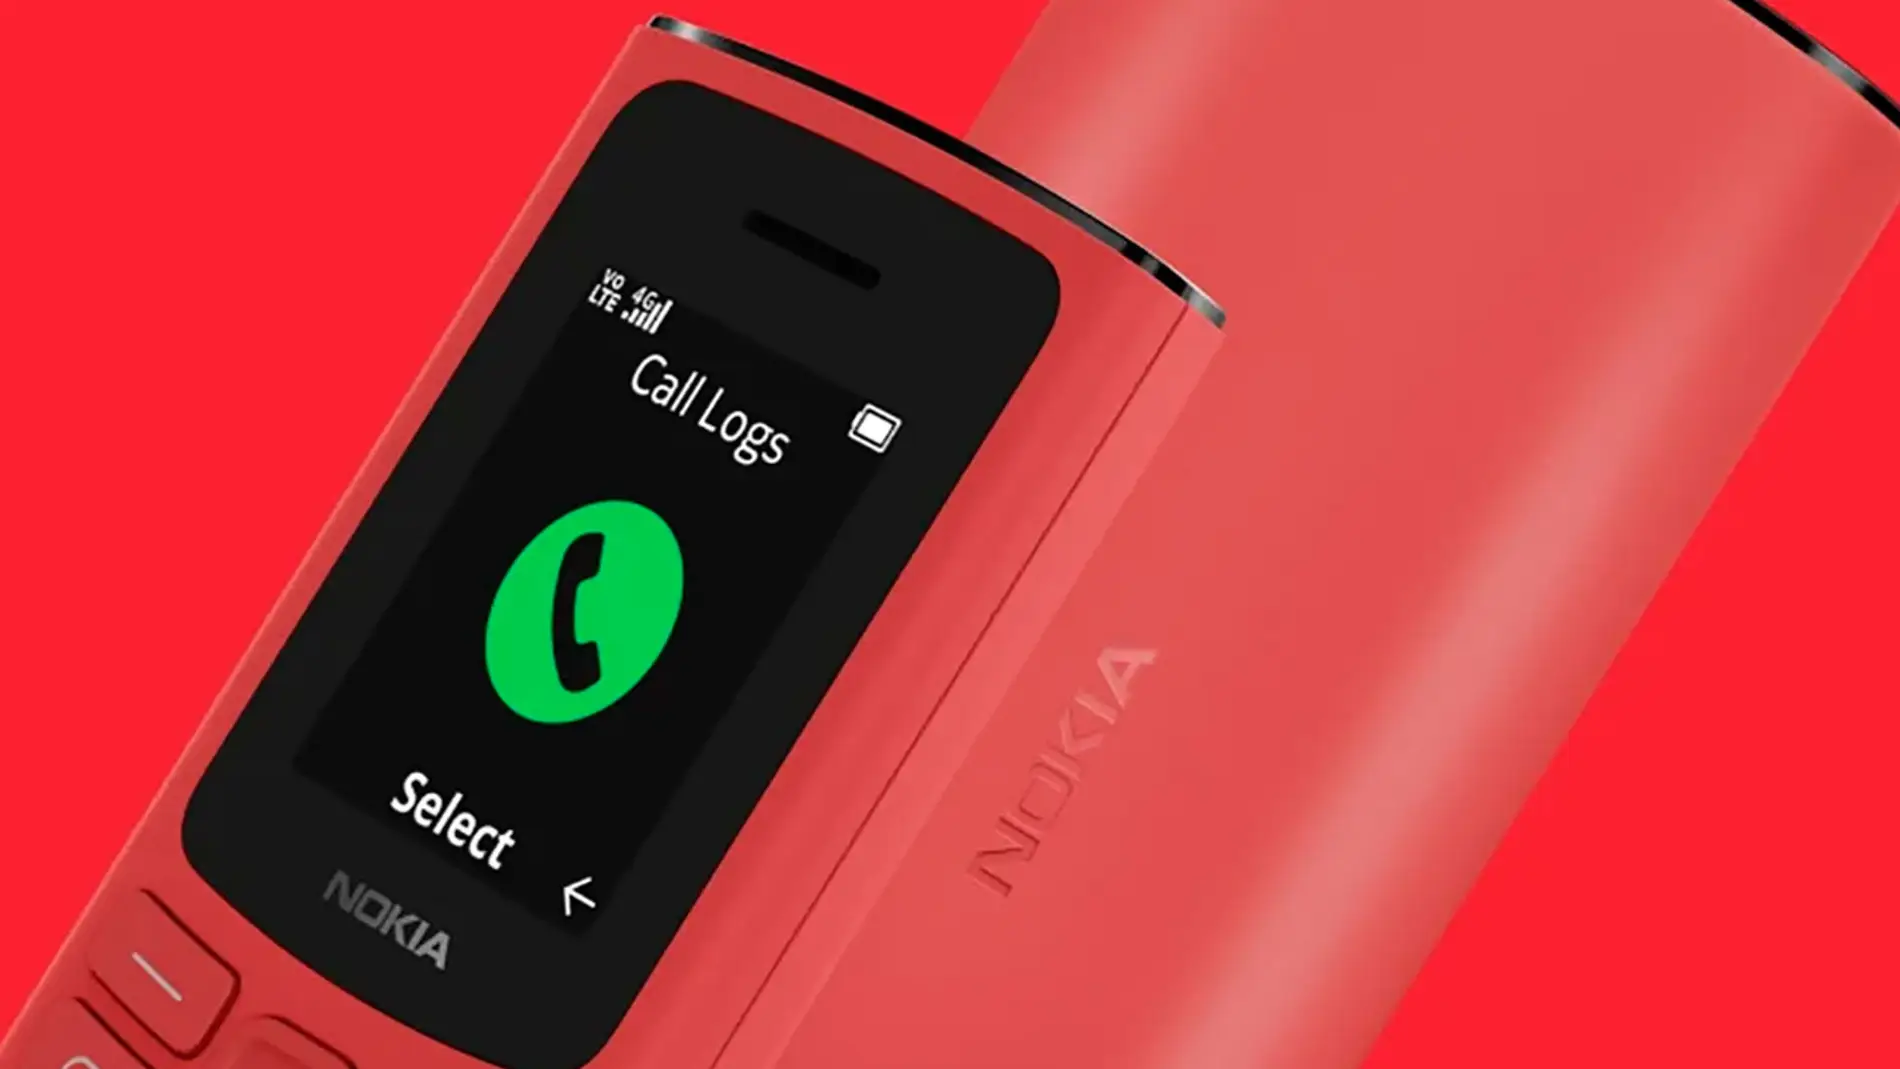 El nuevo teléfono básico Nokia 105